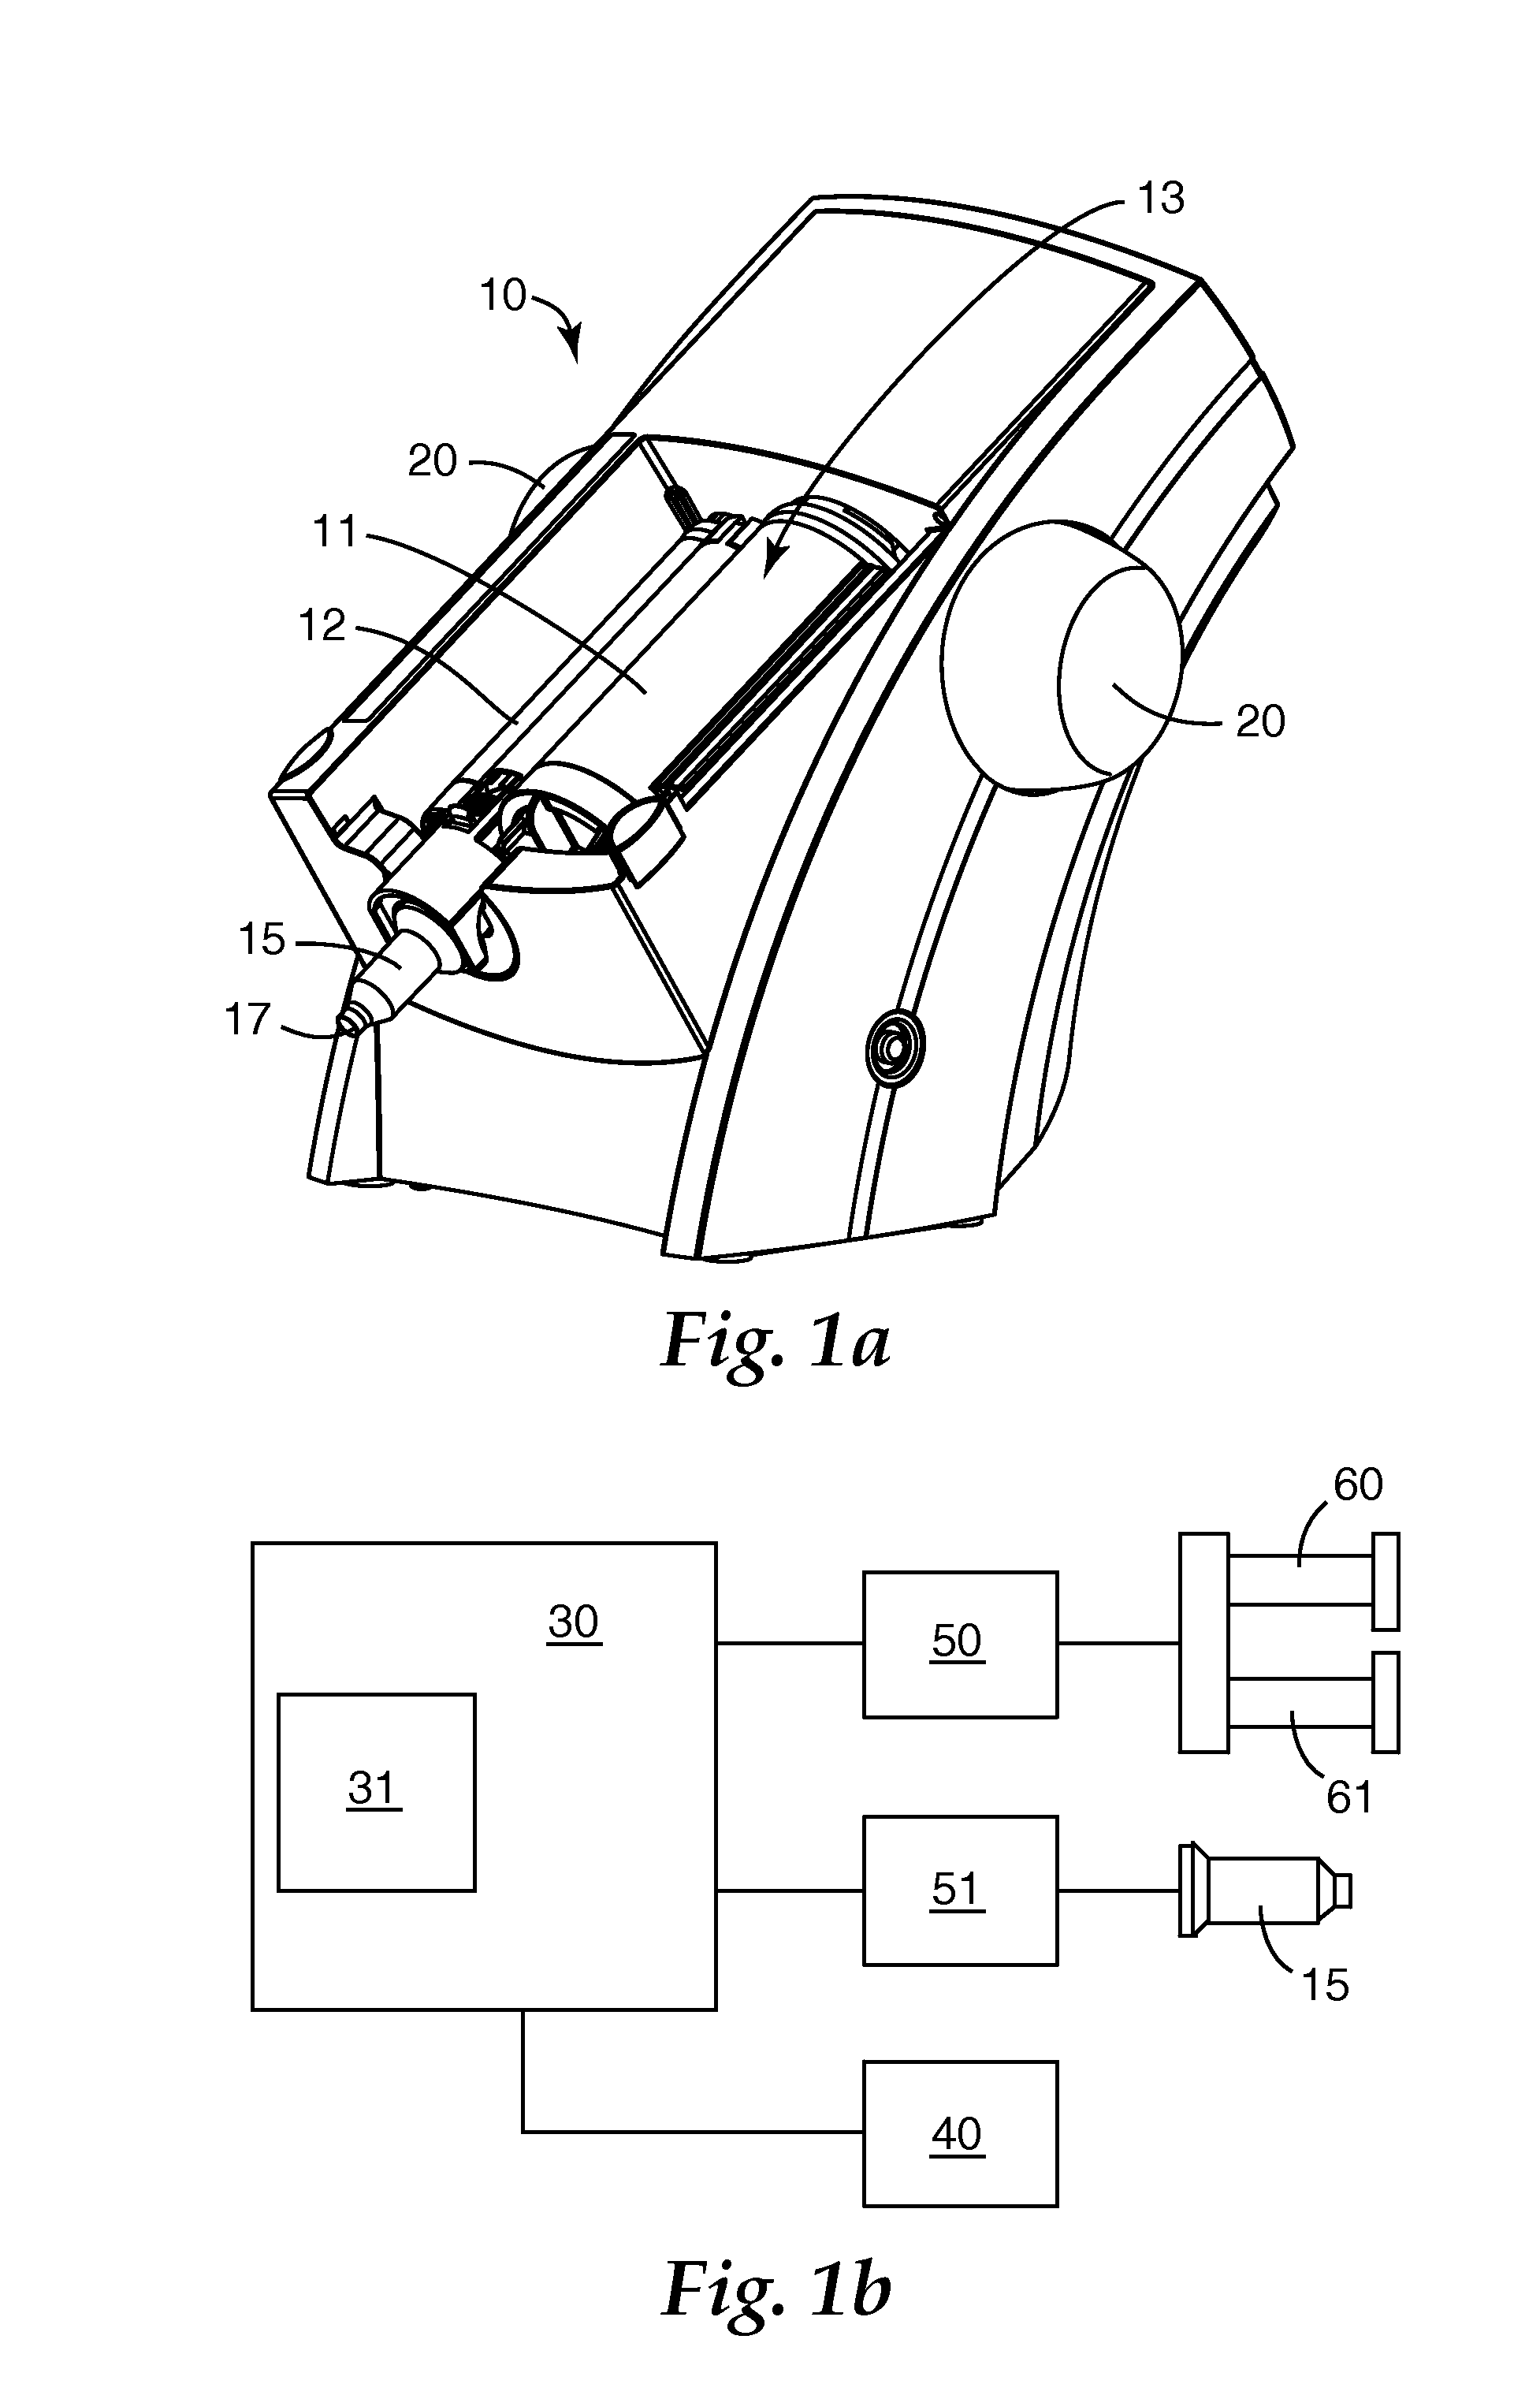 Dispenser and method for dispensing dental material